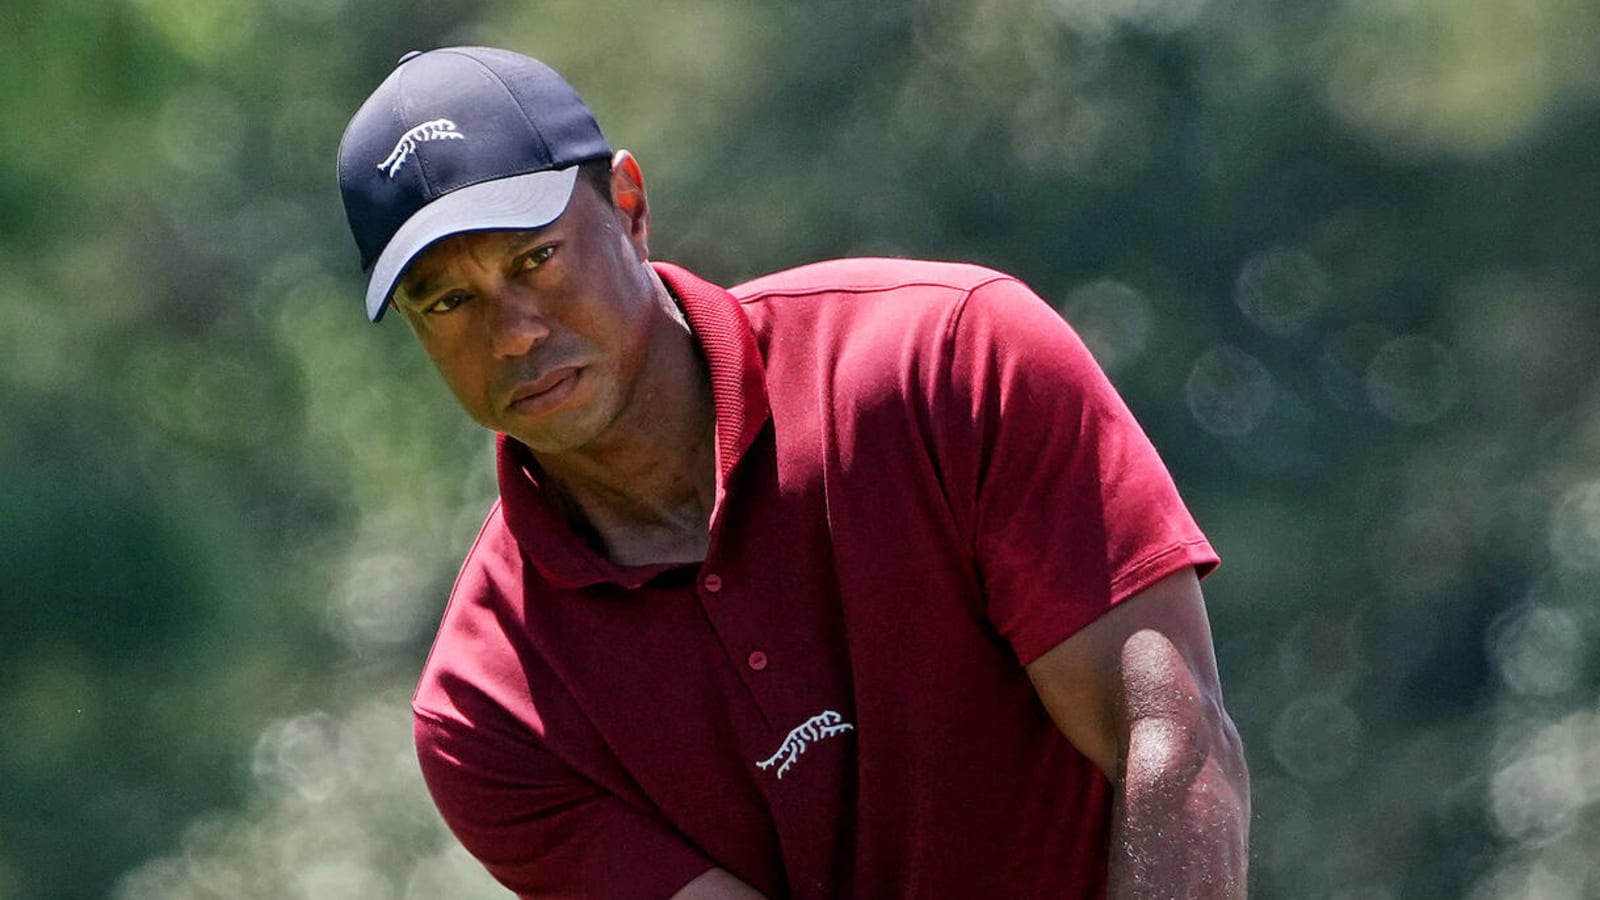 Prime Tiger Woods vs. present-day Scottie Scheffler isn't close